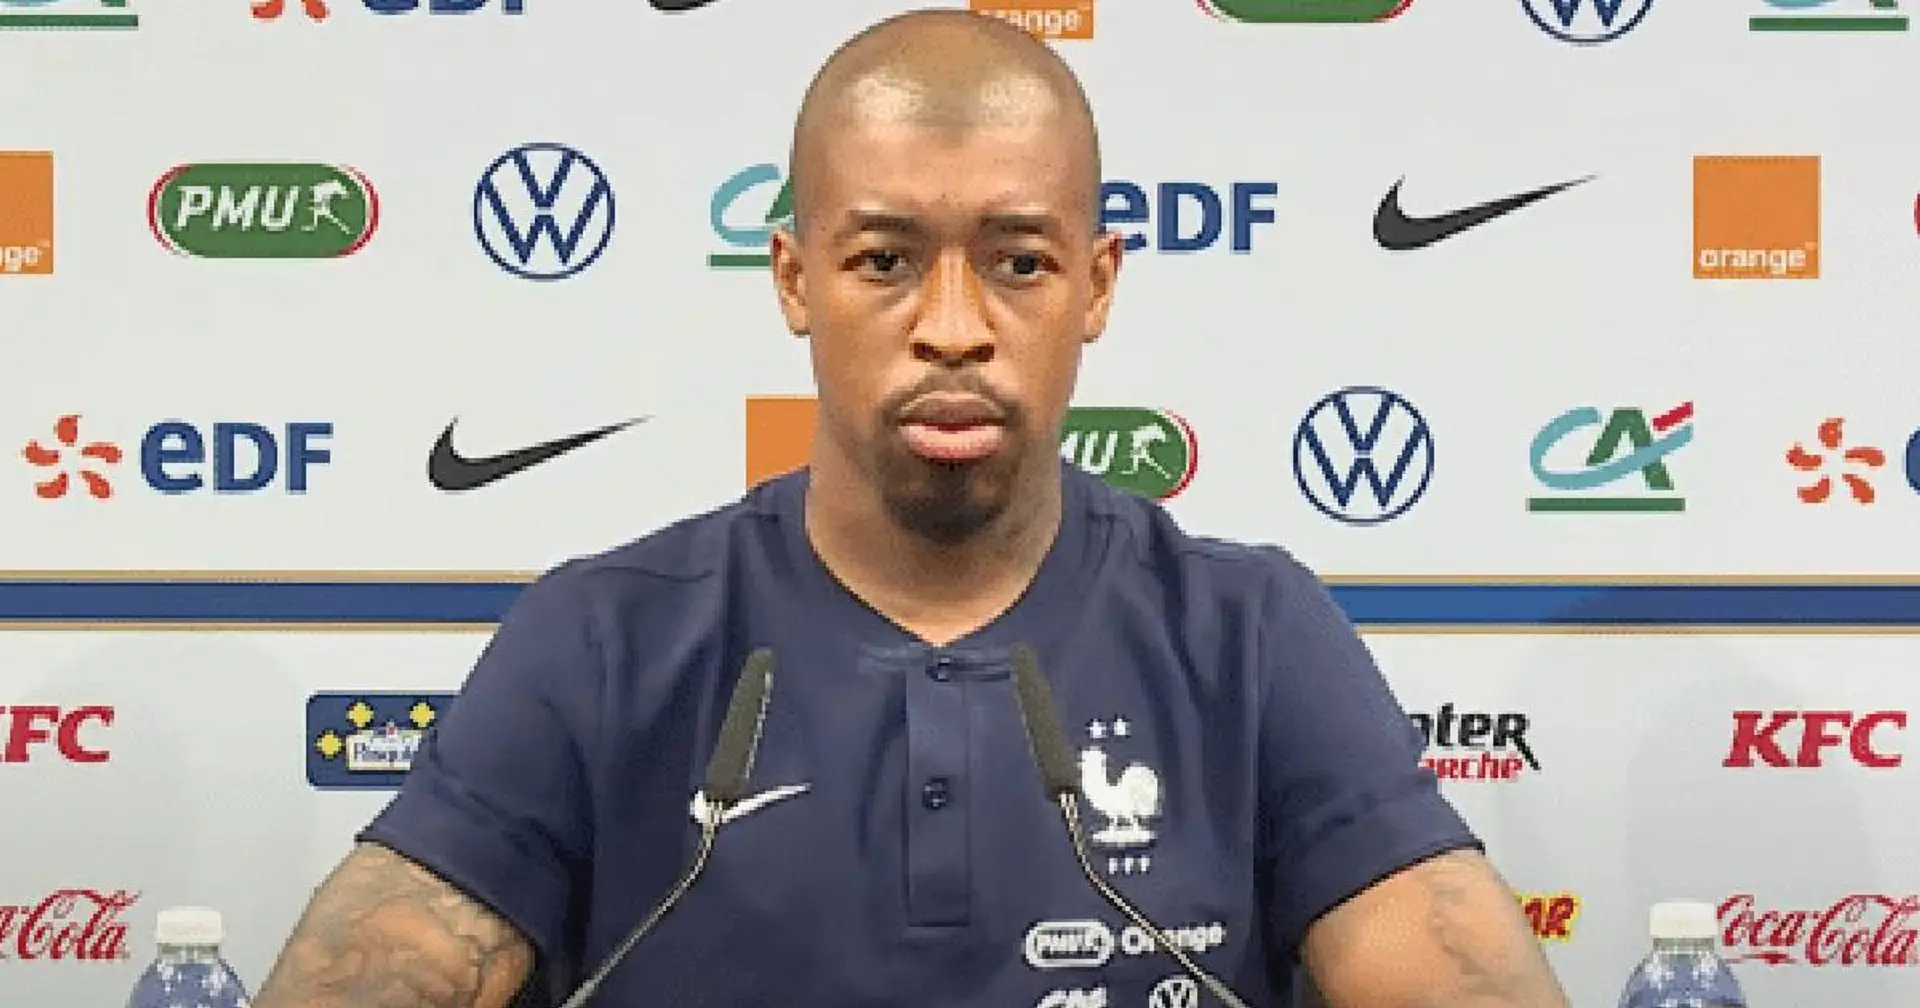 "J’ai pris de l’expérience, notamment avec le PSG en Ligue des champions", Kimpembe confirme sa progression depuis le Mondial 2018 